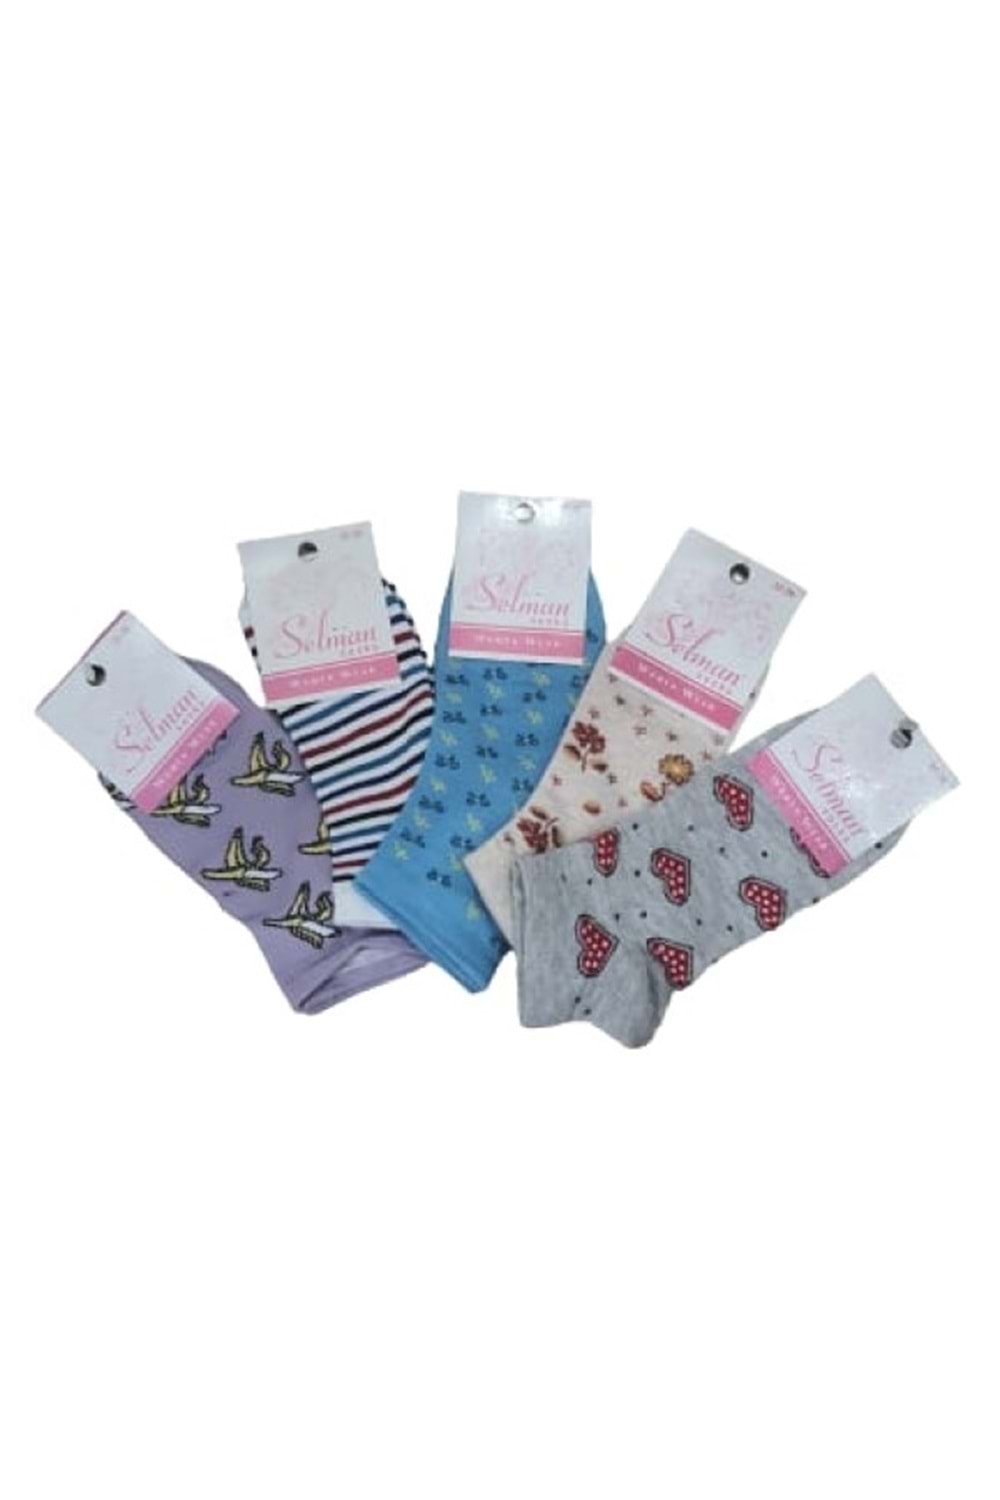 Selman Socks Kadın Pamuk Desenli Patik Çorap 36-40 (5 Adet) S 01582 - Karışık Renkli - 35-39